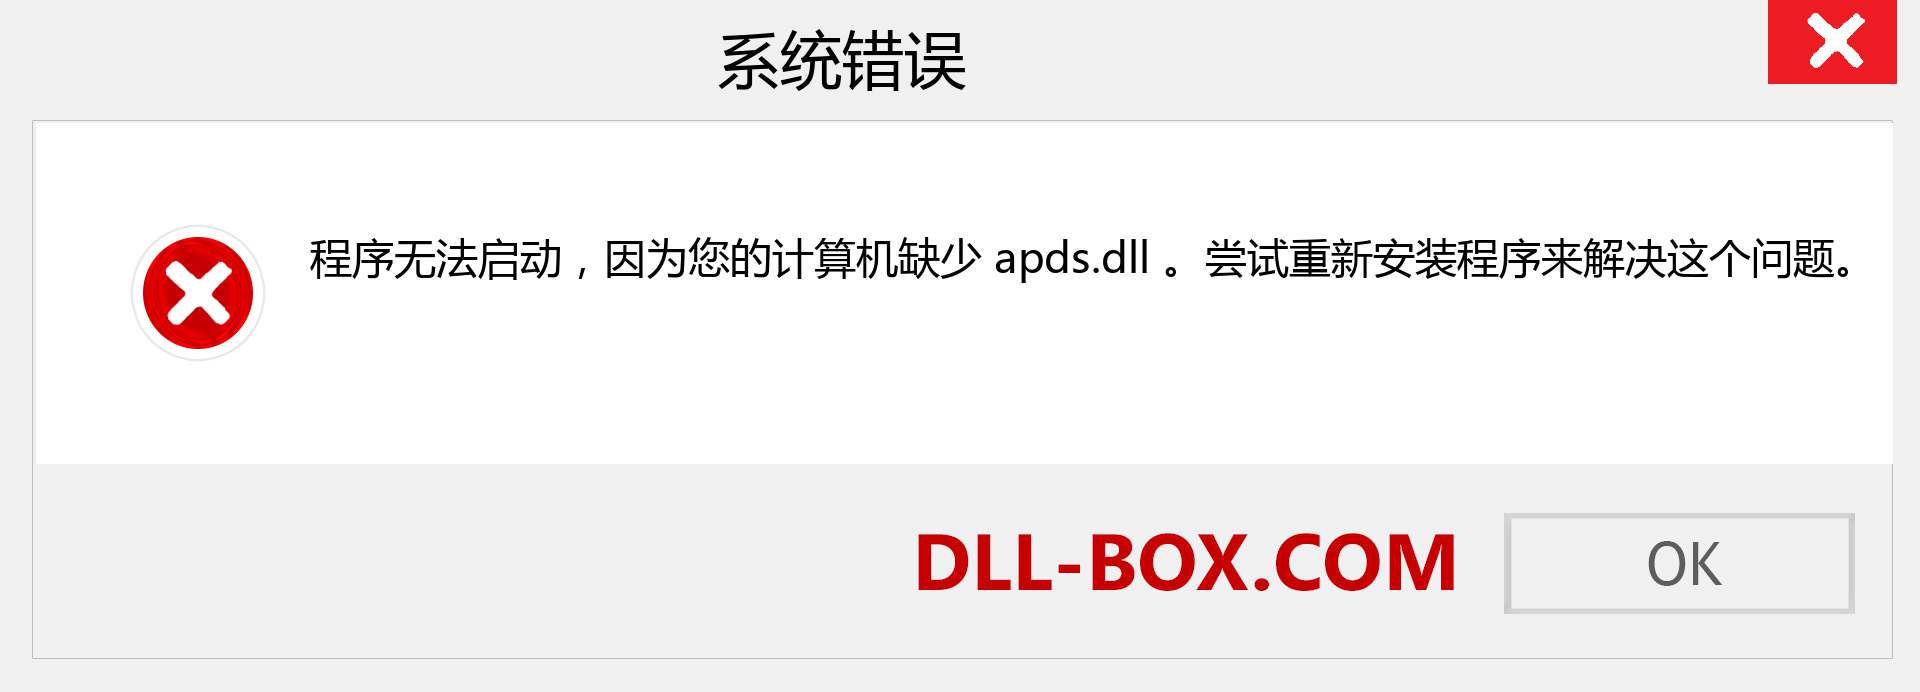 apds.dll 文件丢失？。 适用于 Windows 7、8、10 的下载 - 修复 Windows、照片、图像上的 apds dll 丢失错误